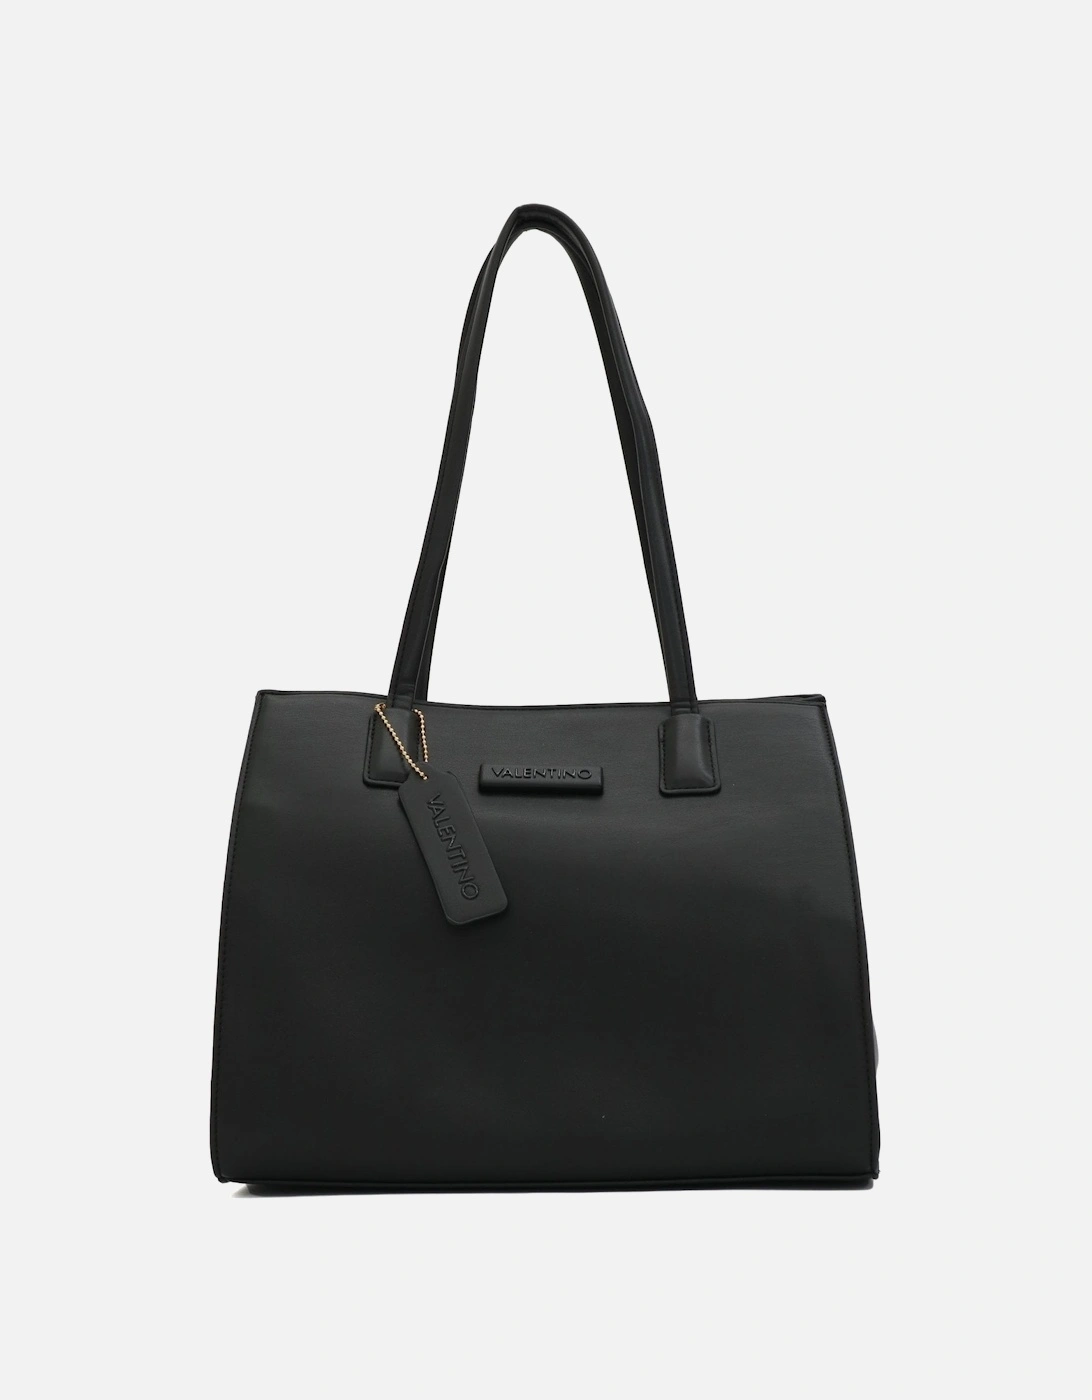 Kensington Large Black Shopper Bag